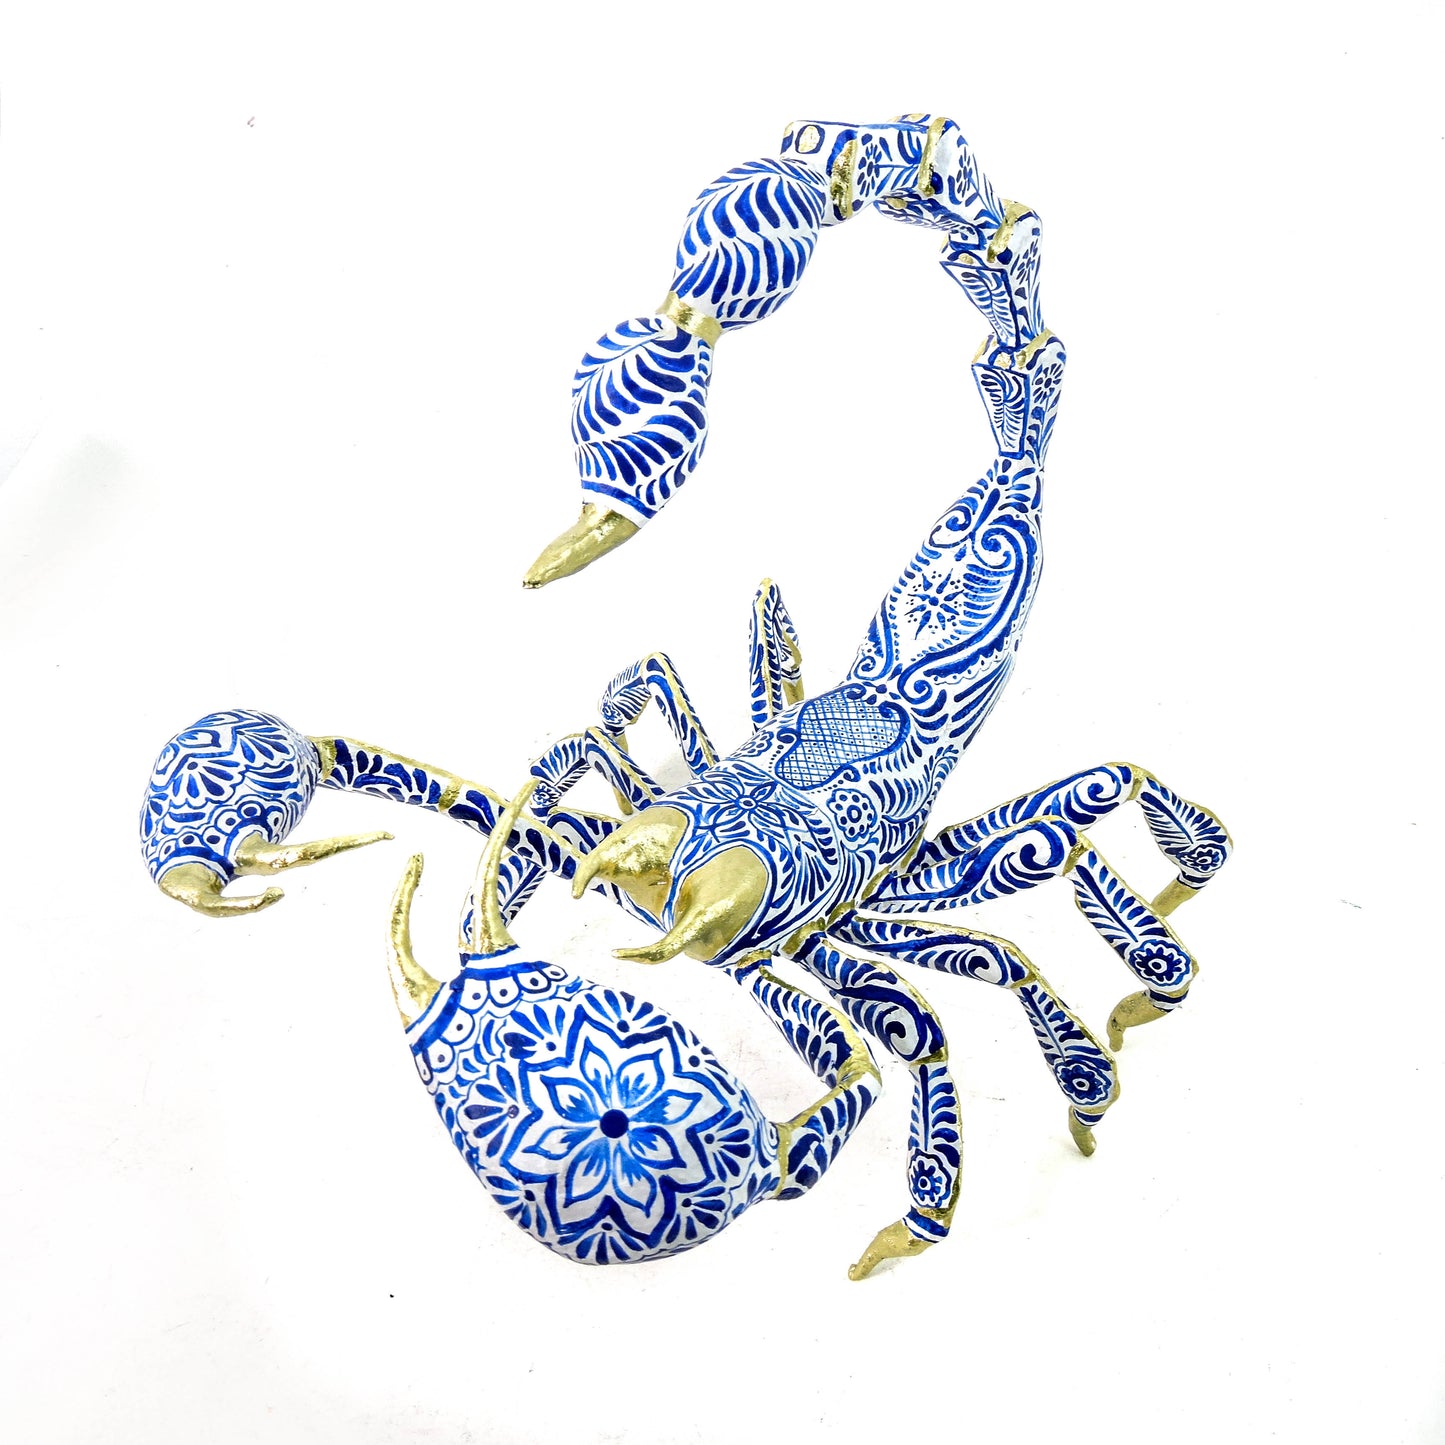 Escorpion ceramica II